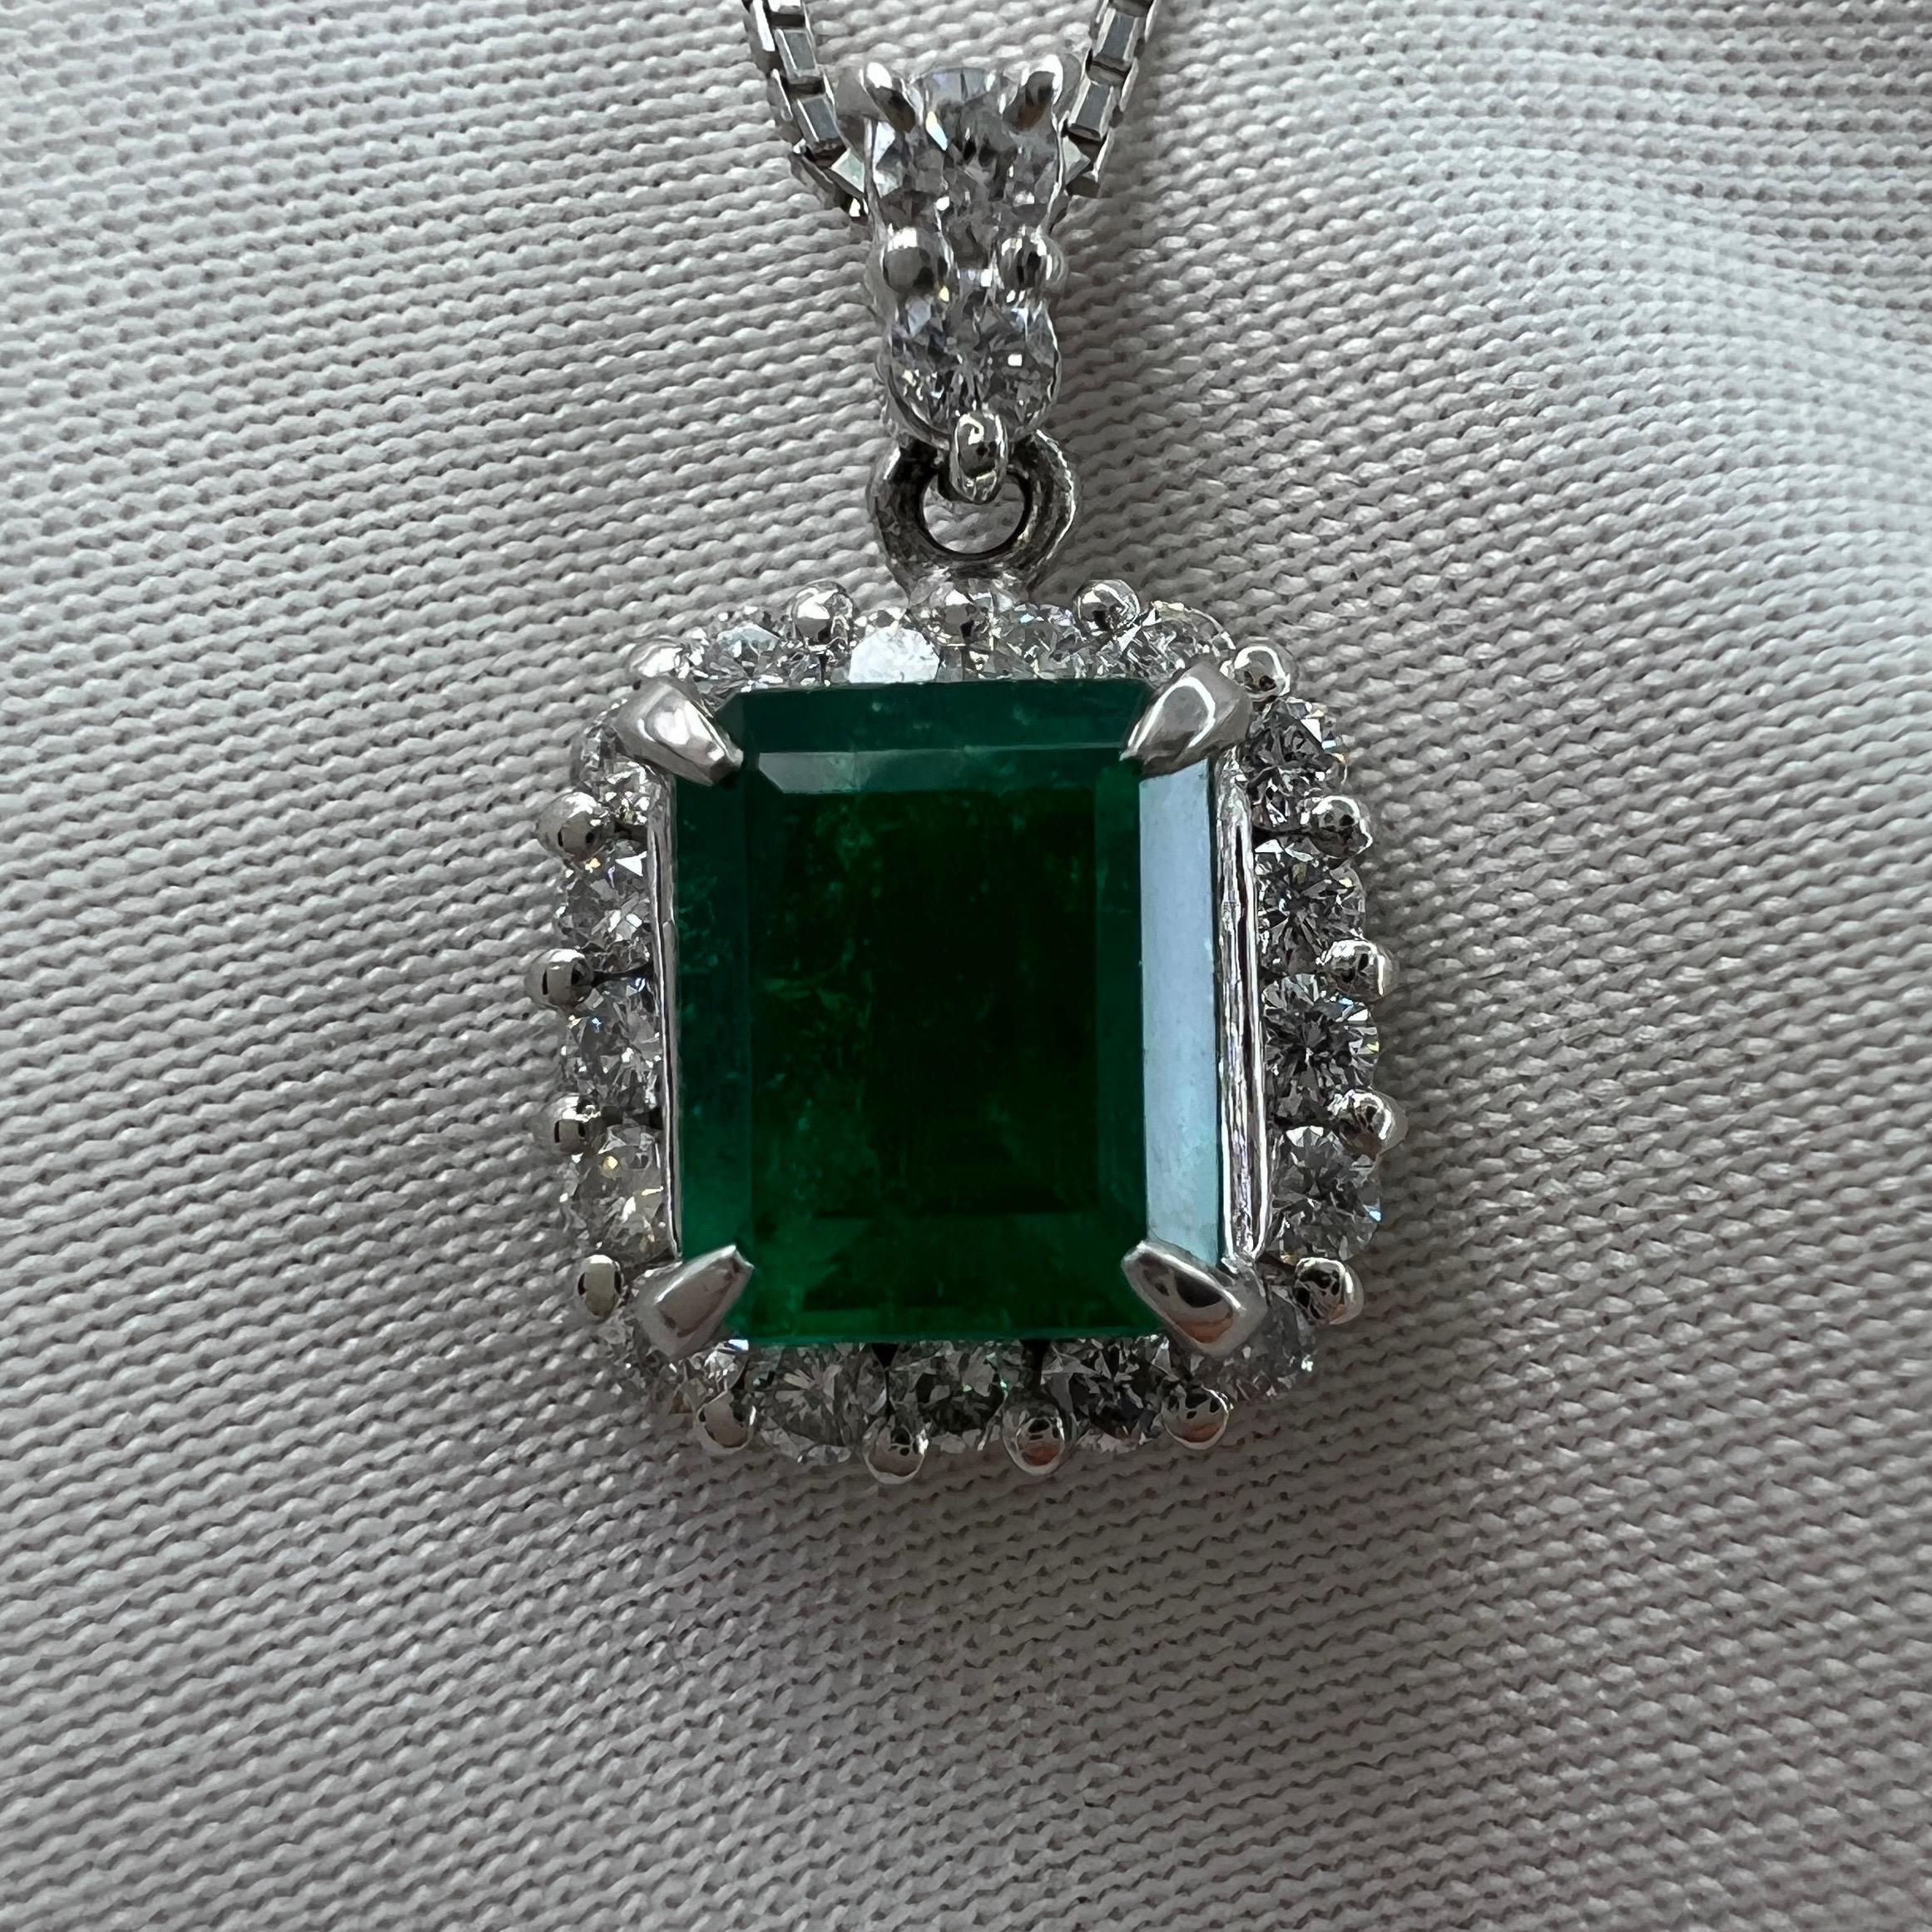 Collier à pendentifs en platine avec émeraude colombienne et diamant, de couleur naturelle vert vif.

Émeraude colombienne de 1,04 carat d'une belle couleur vert vif intense et d'une très bonne clarté. Quelques petites inclusions naturelles sont